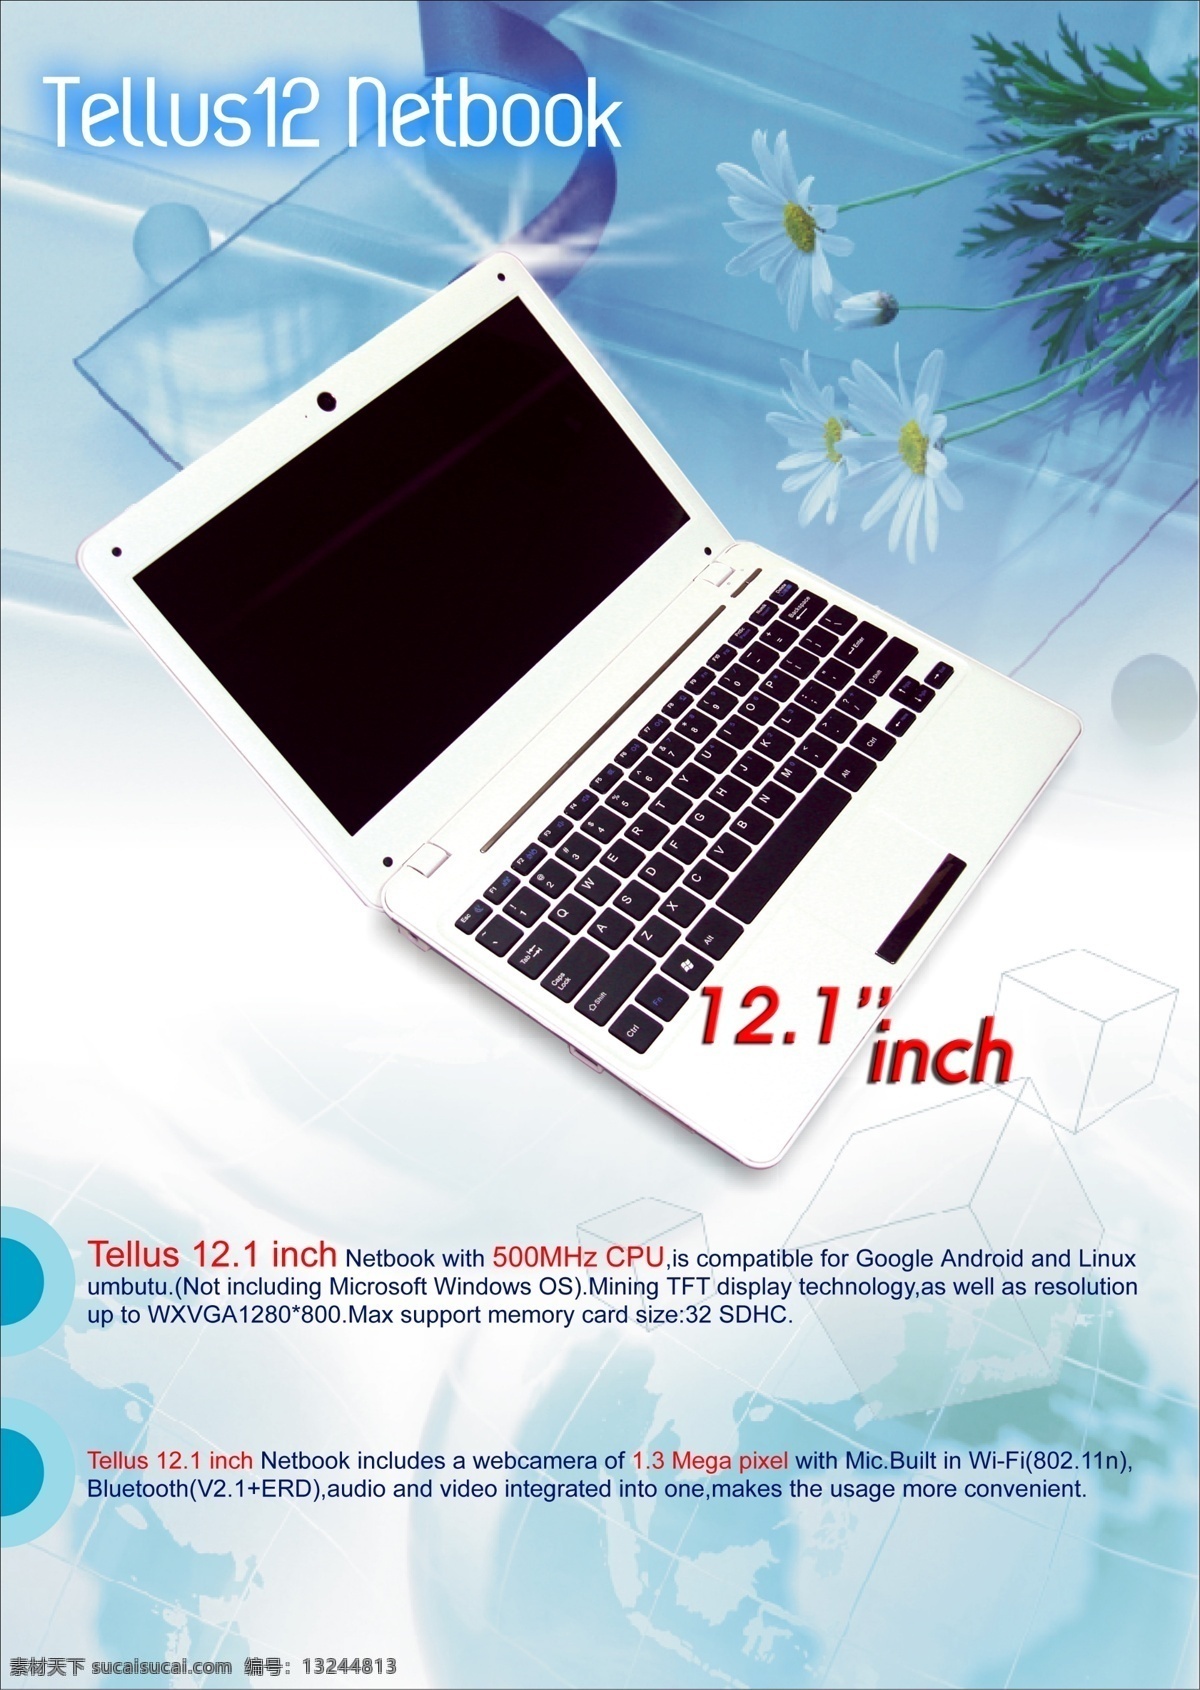 dm宣传单 白色 地球 广告设计模板 花 计算机 源文件 笔记 型 模板下载 笔记型计算机 笔记型 矢量图 现代科技